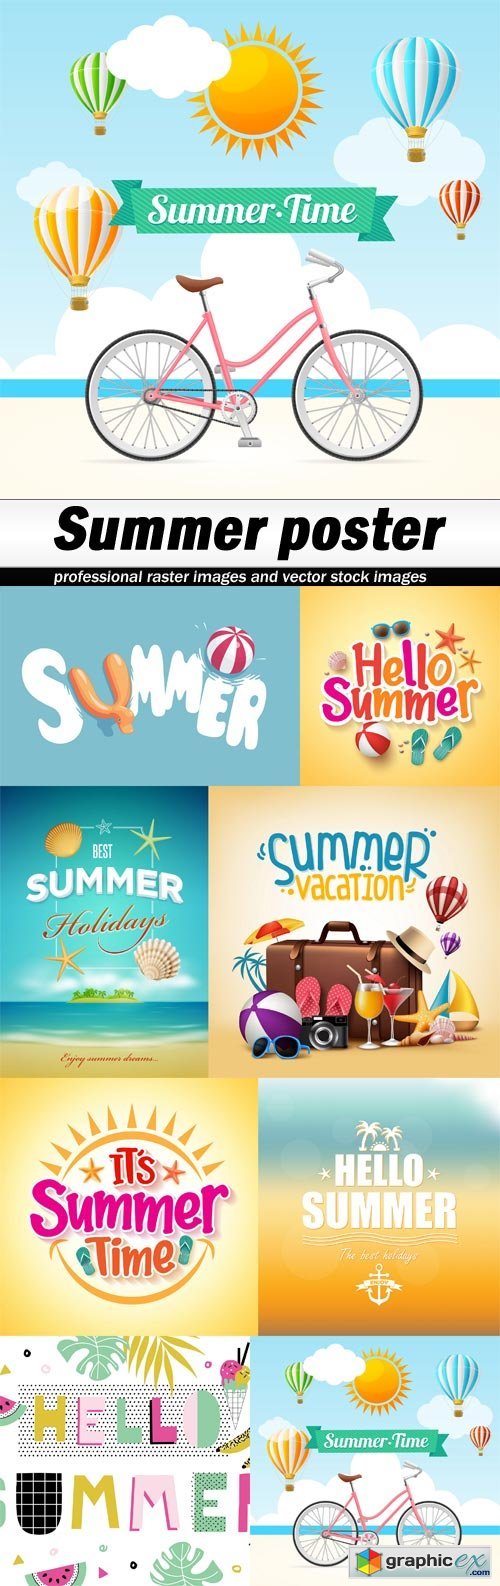 Summer poster-8 EPS